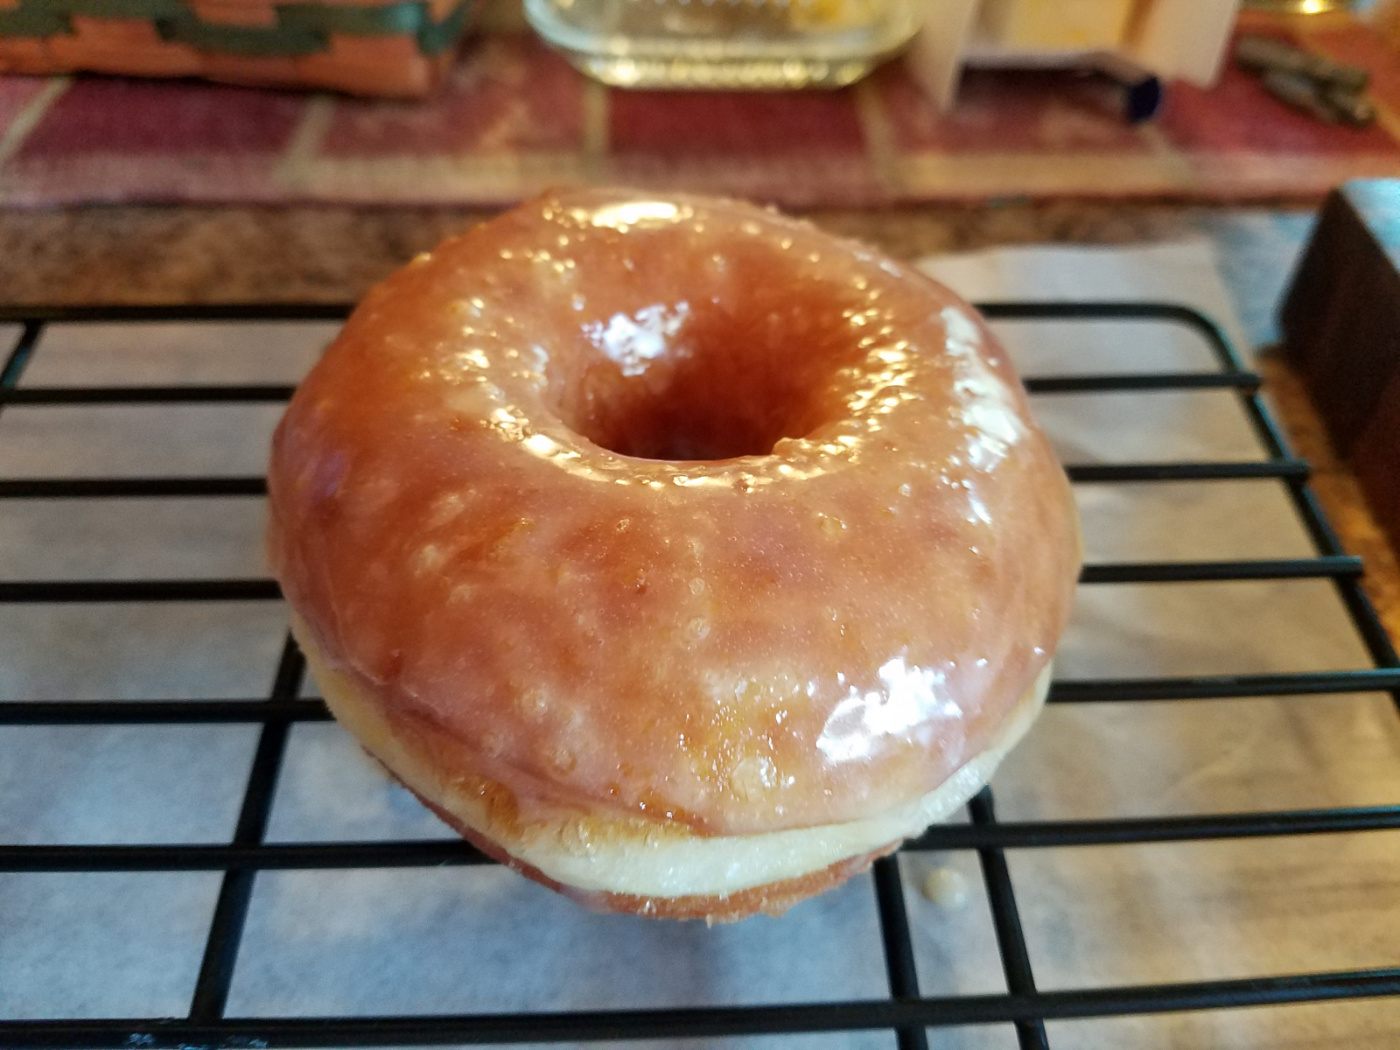 glazed donut drying on a baking rack.